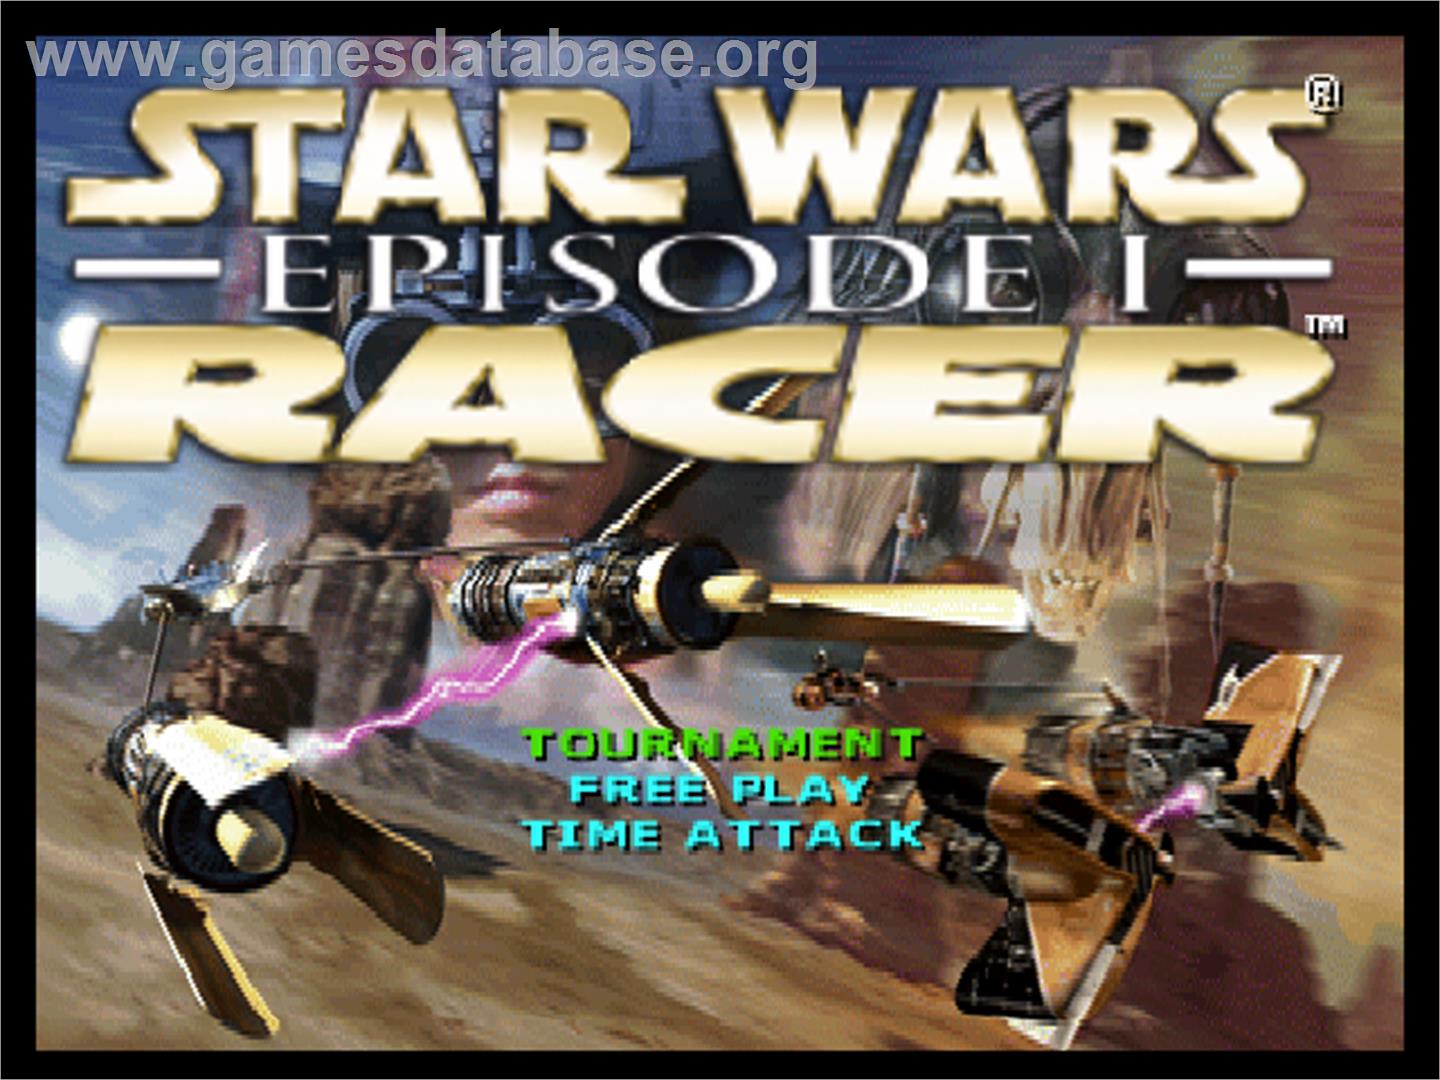 Star Wars: Episode I - Racer - Nintendo N64 - Artwork - Title Screen